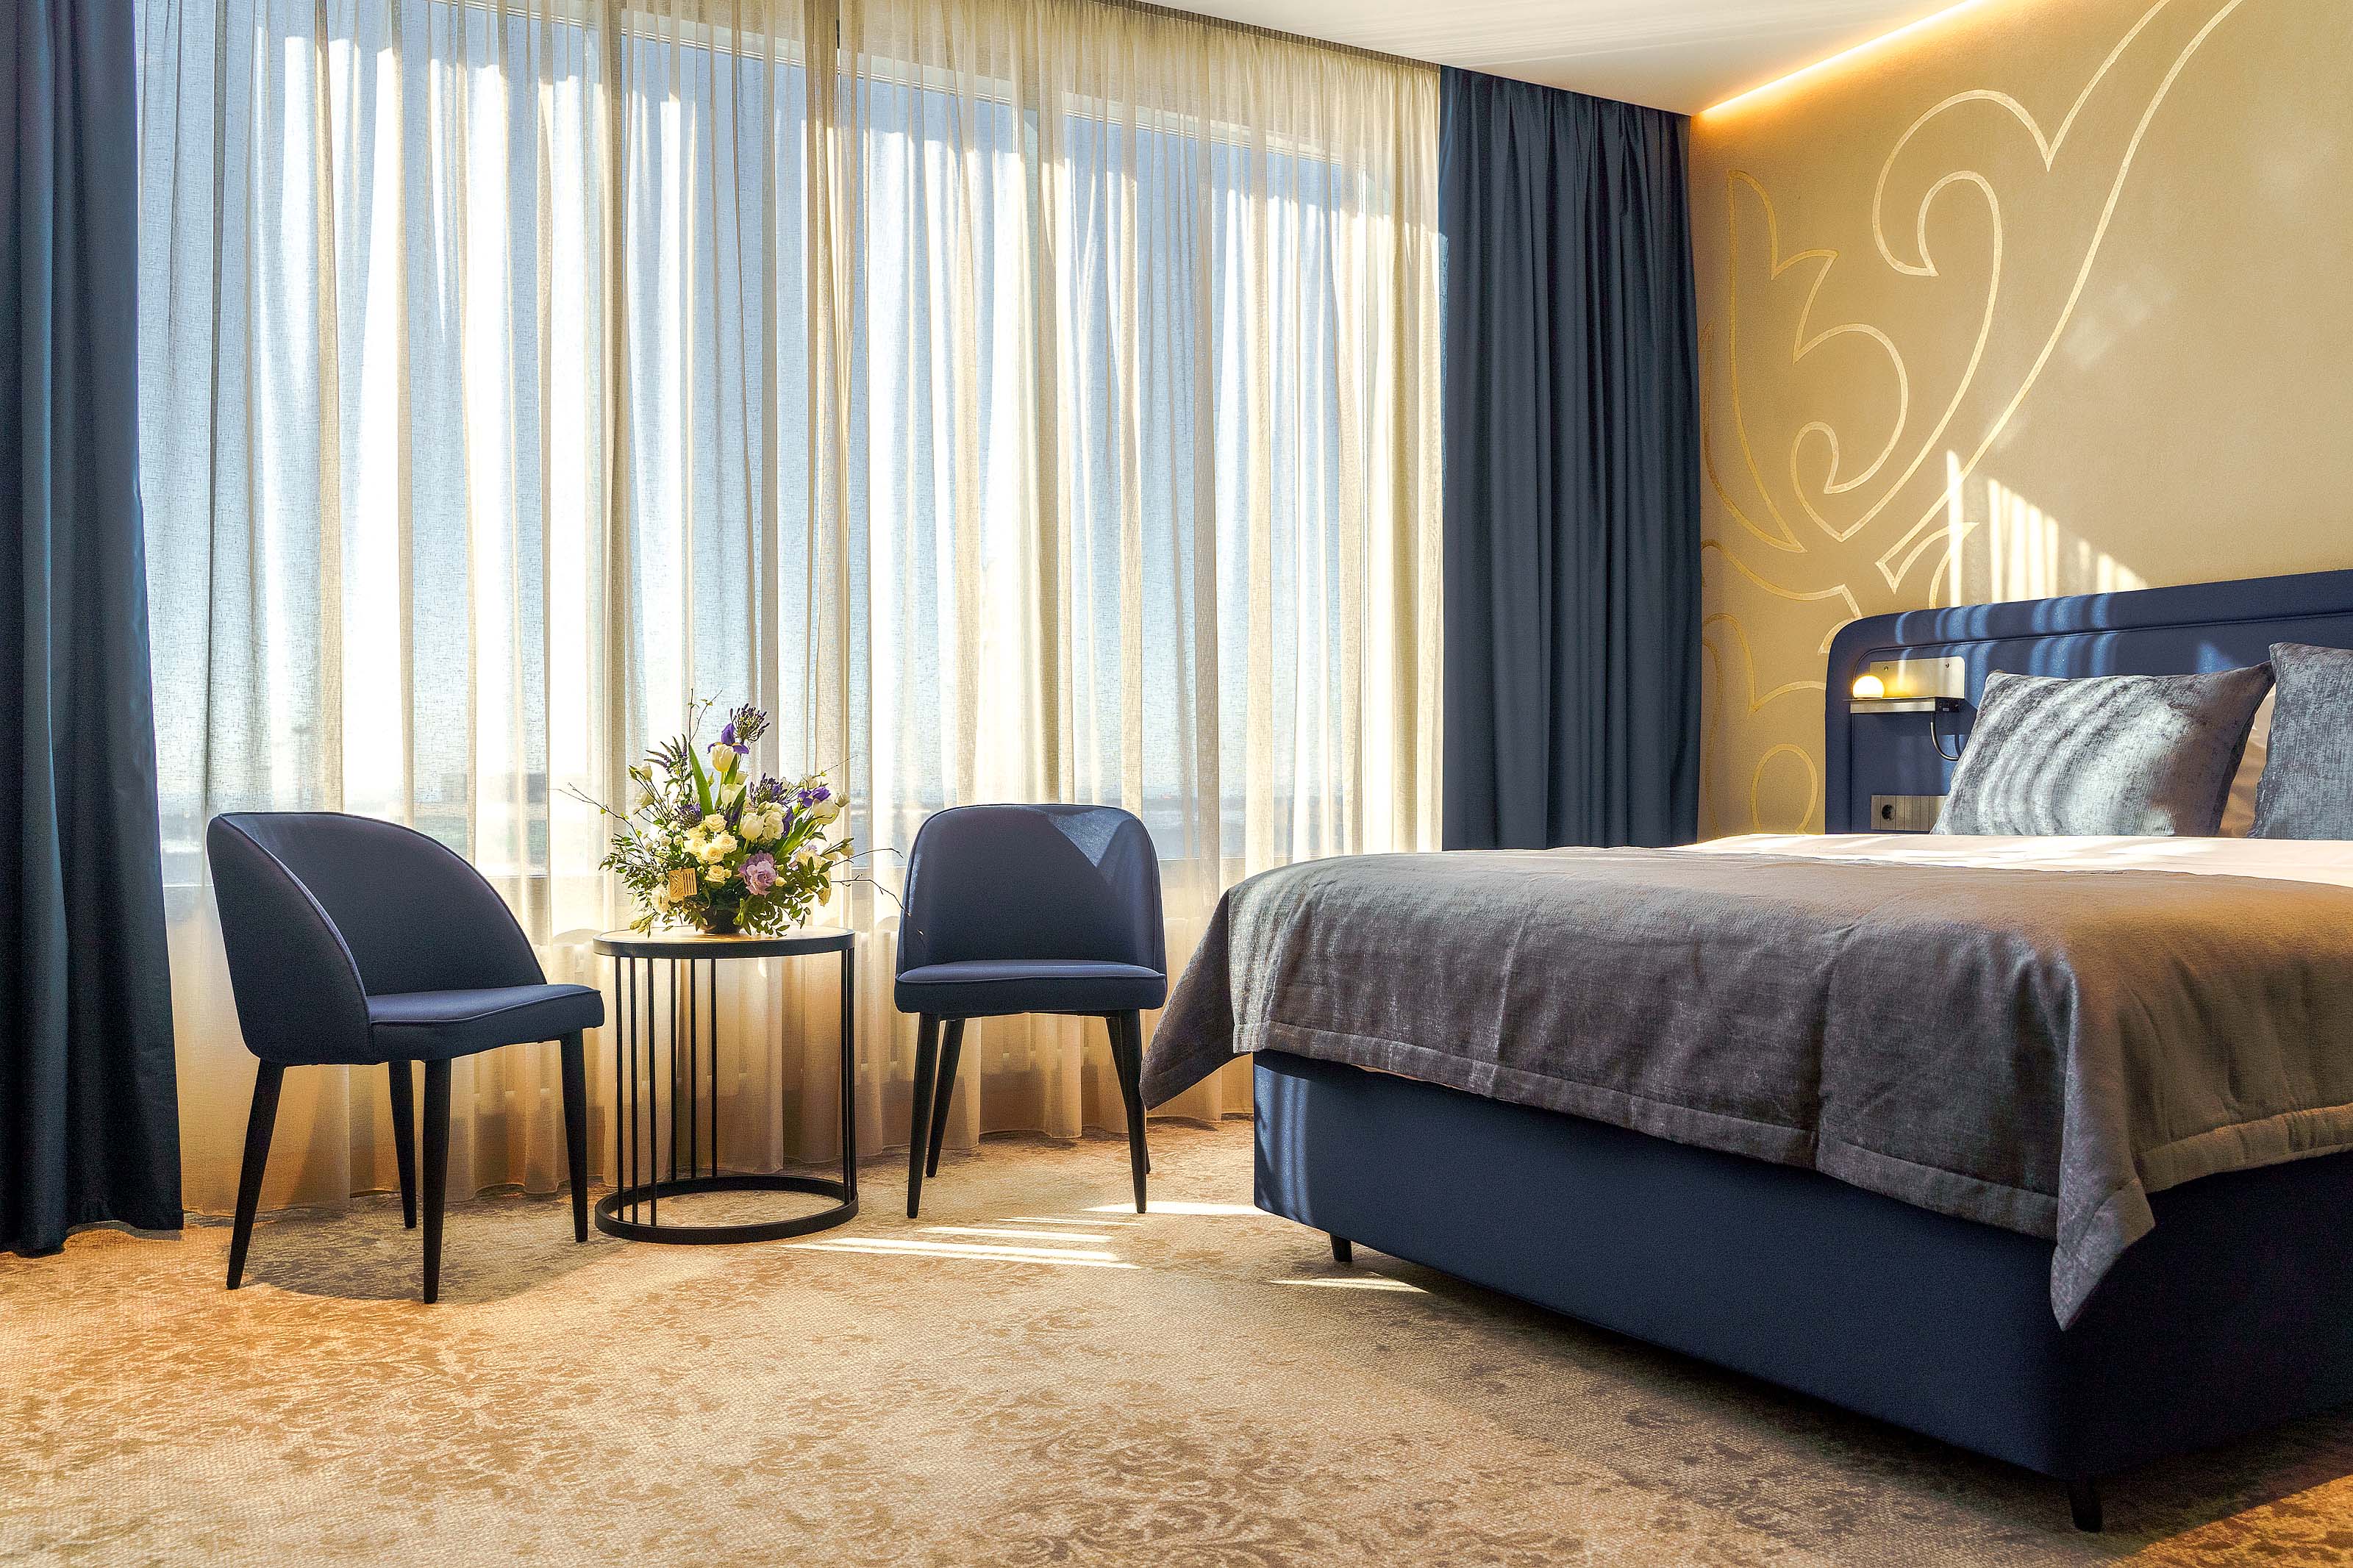 Открылся новый гостиничный комплекс KRAVT HOTEL KAZAN AIRPORT